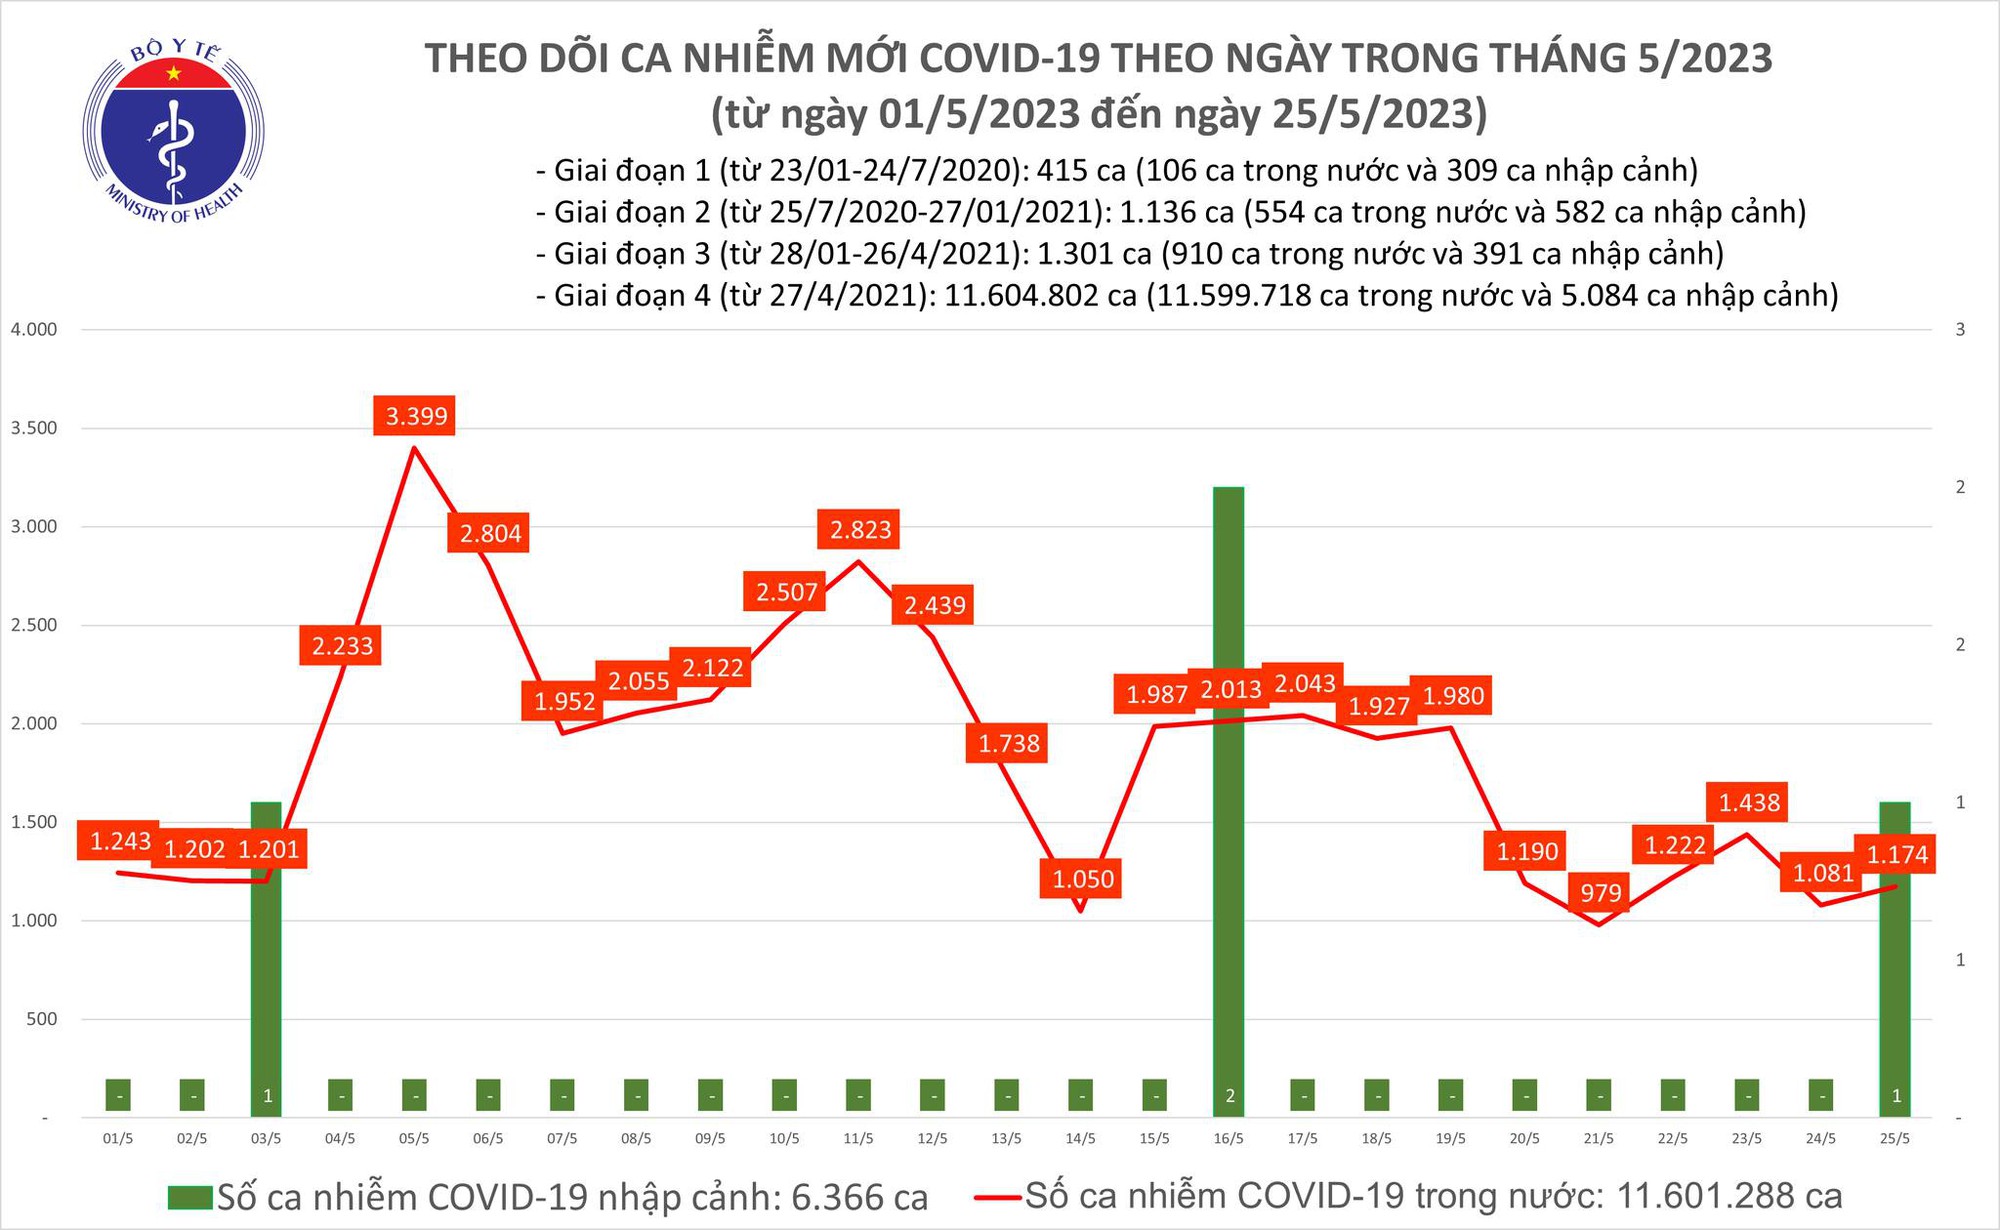 Ngày 25/5: Có 1.174 ca COVID-19 mới, 1 bệnh nhân ở Bến Tre tử vong - Ảnh 1.